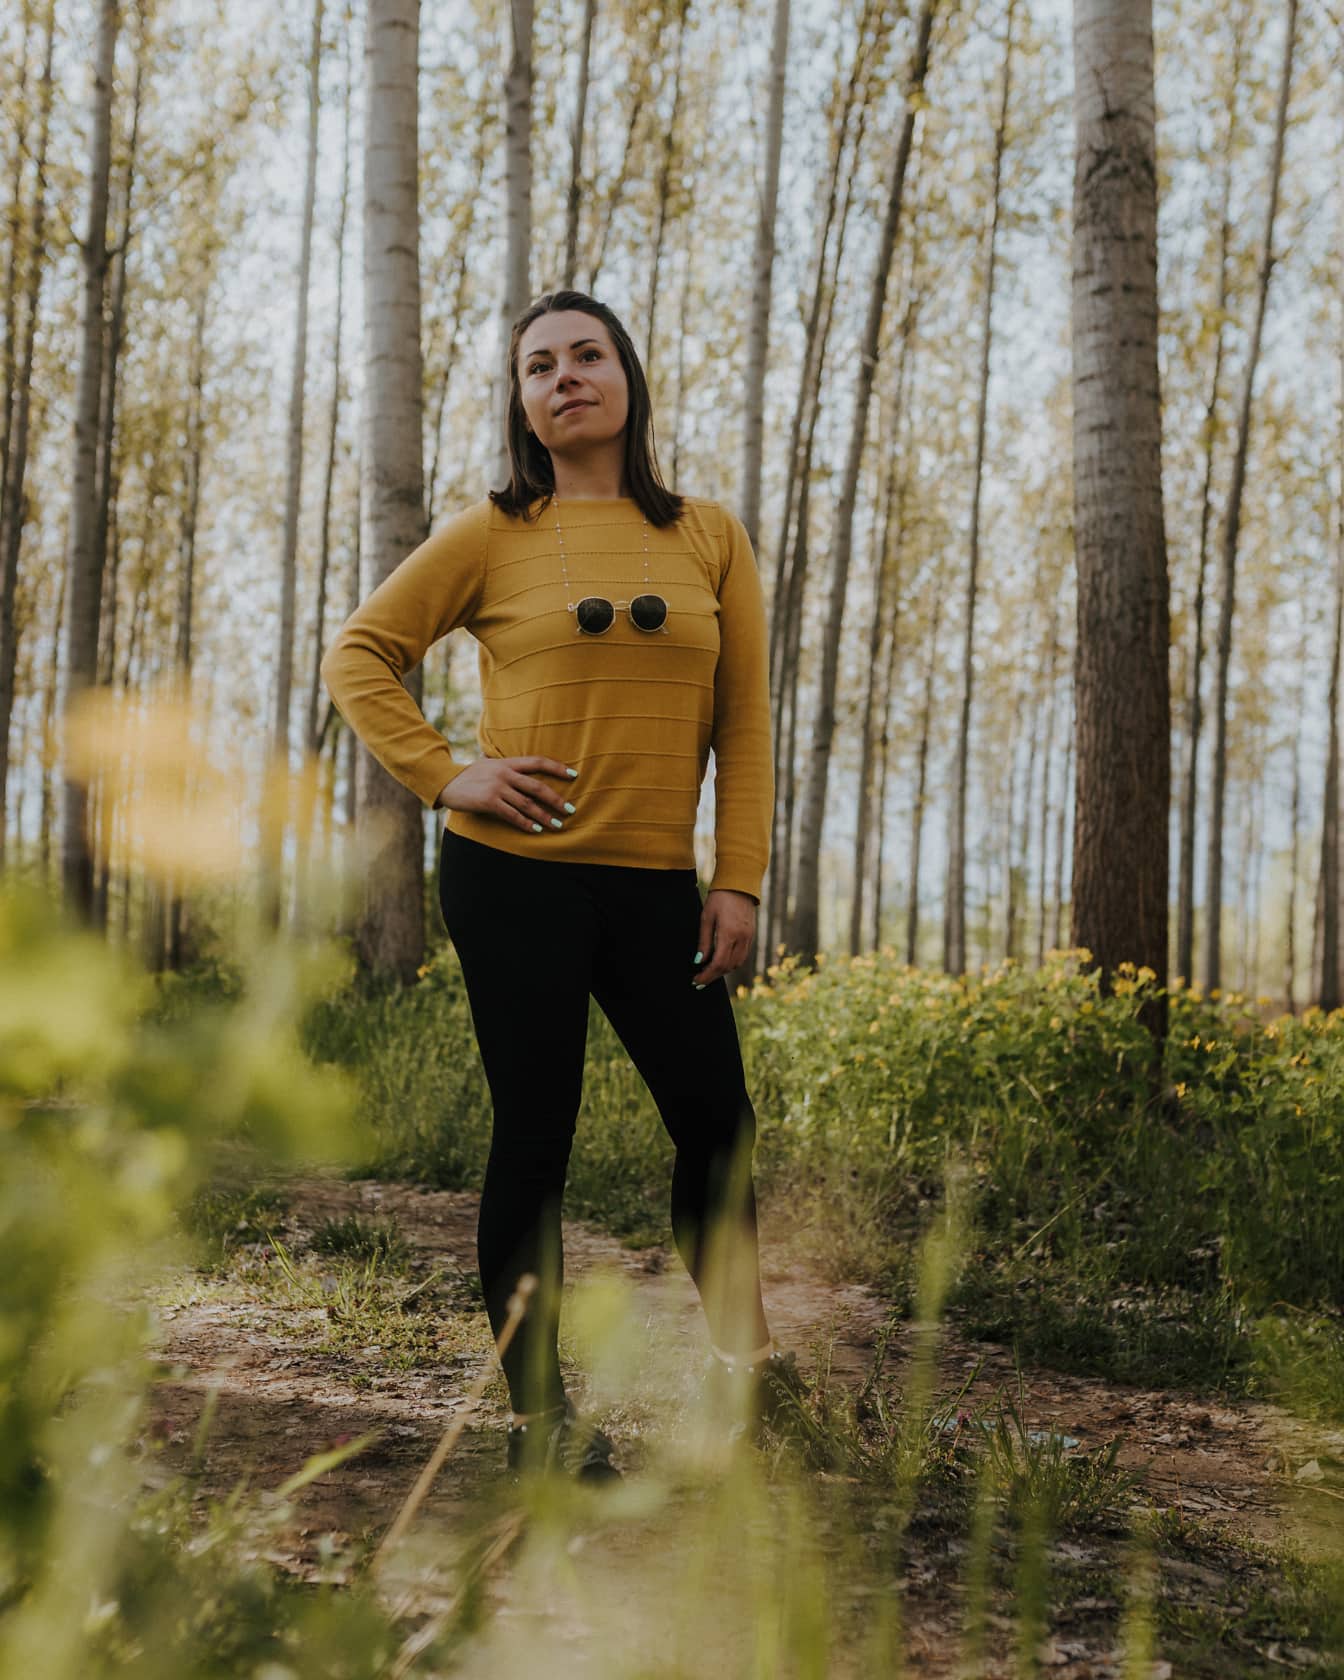 Przystojna kobieta z ładną twarzą stojąca w lesie w żółtawo-brązowym swetrze